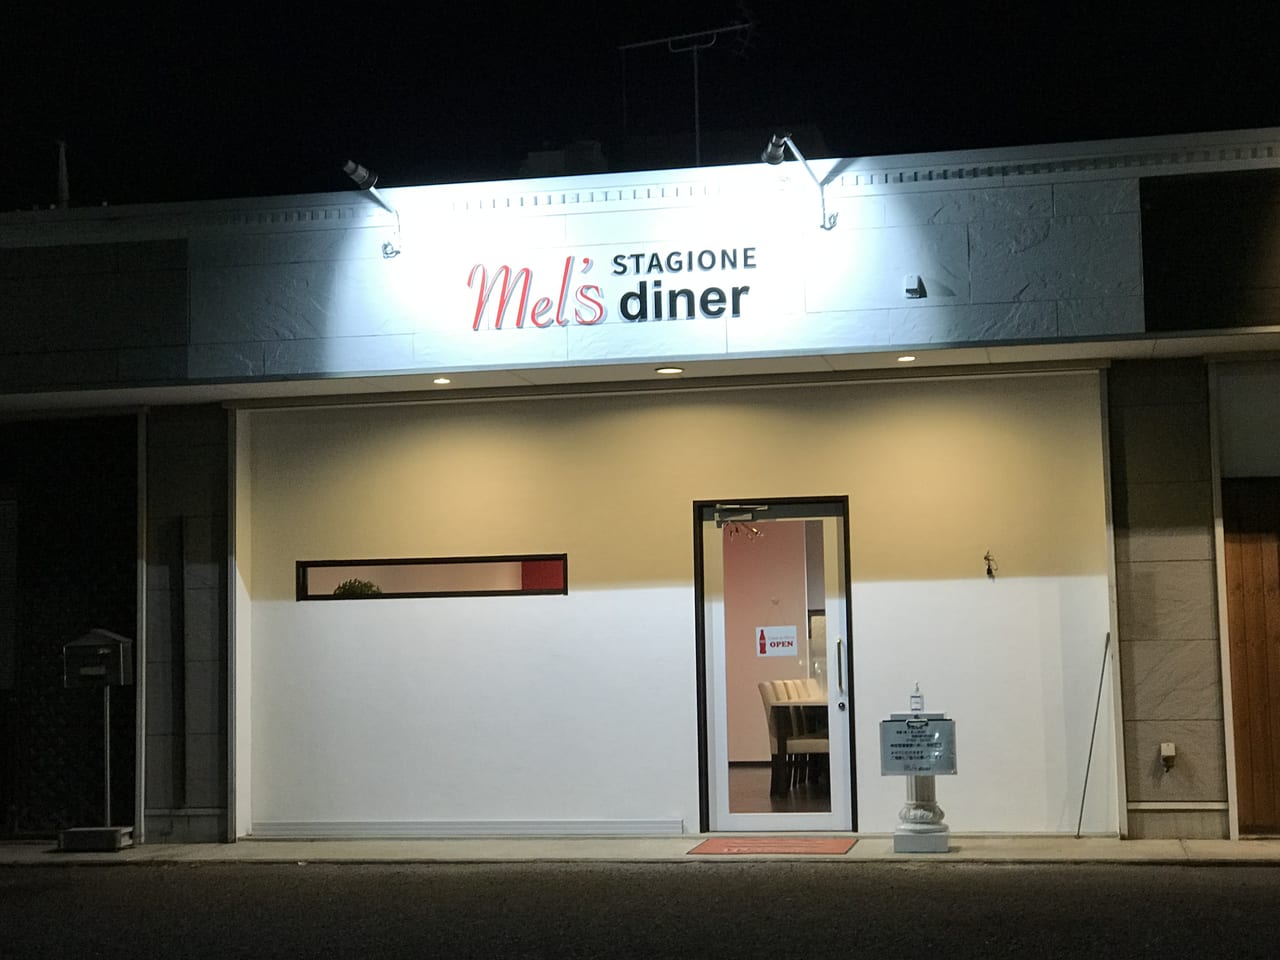 Mel’s diner